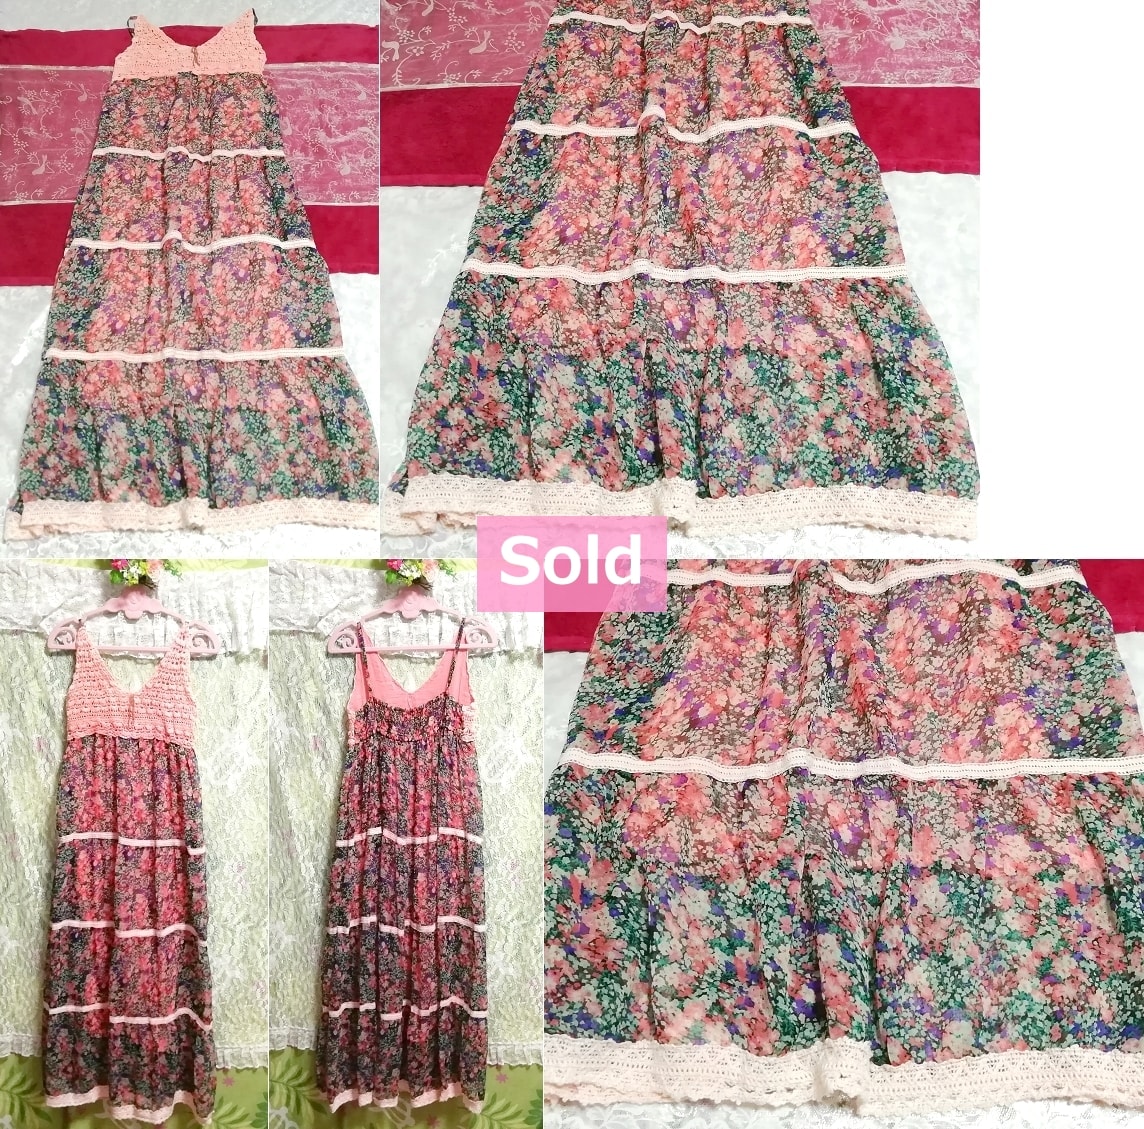 Сделано в Индии, розовая кружевная шифоновая длинная юбка с цветочным принтом, длинная макси-юбка, индийская розовая кружевная, с цветочным рисунком, длинная шифоновая длинная юбка, макси, цельная